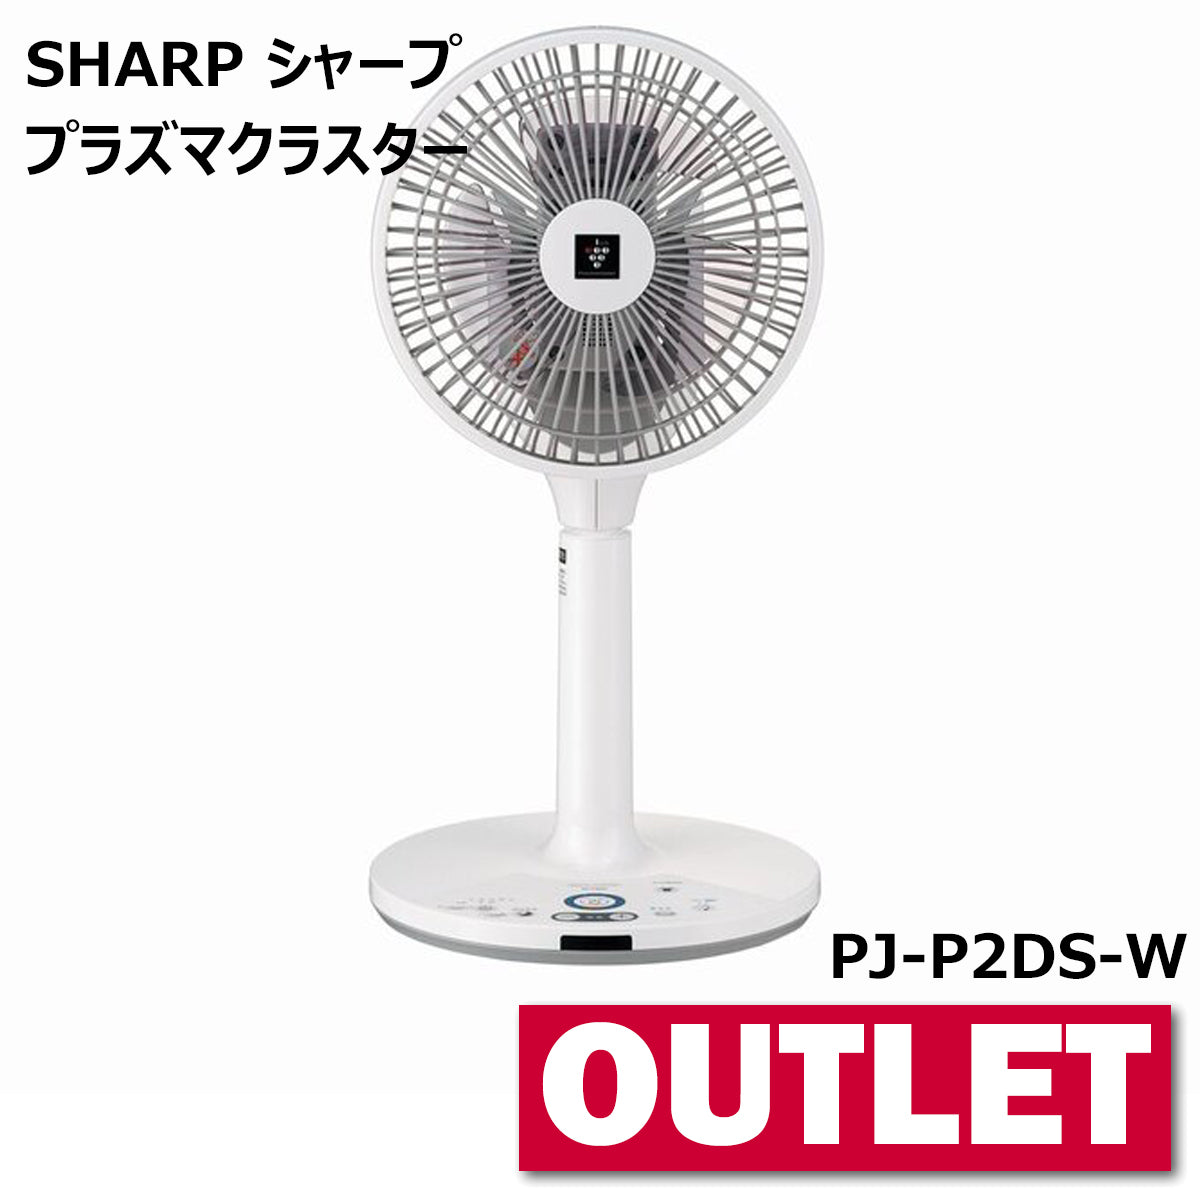 PJ-P2DS-T シャープ SHARP 扇風機 プラズマクラスター ブラウン-